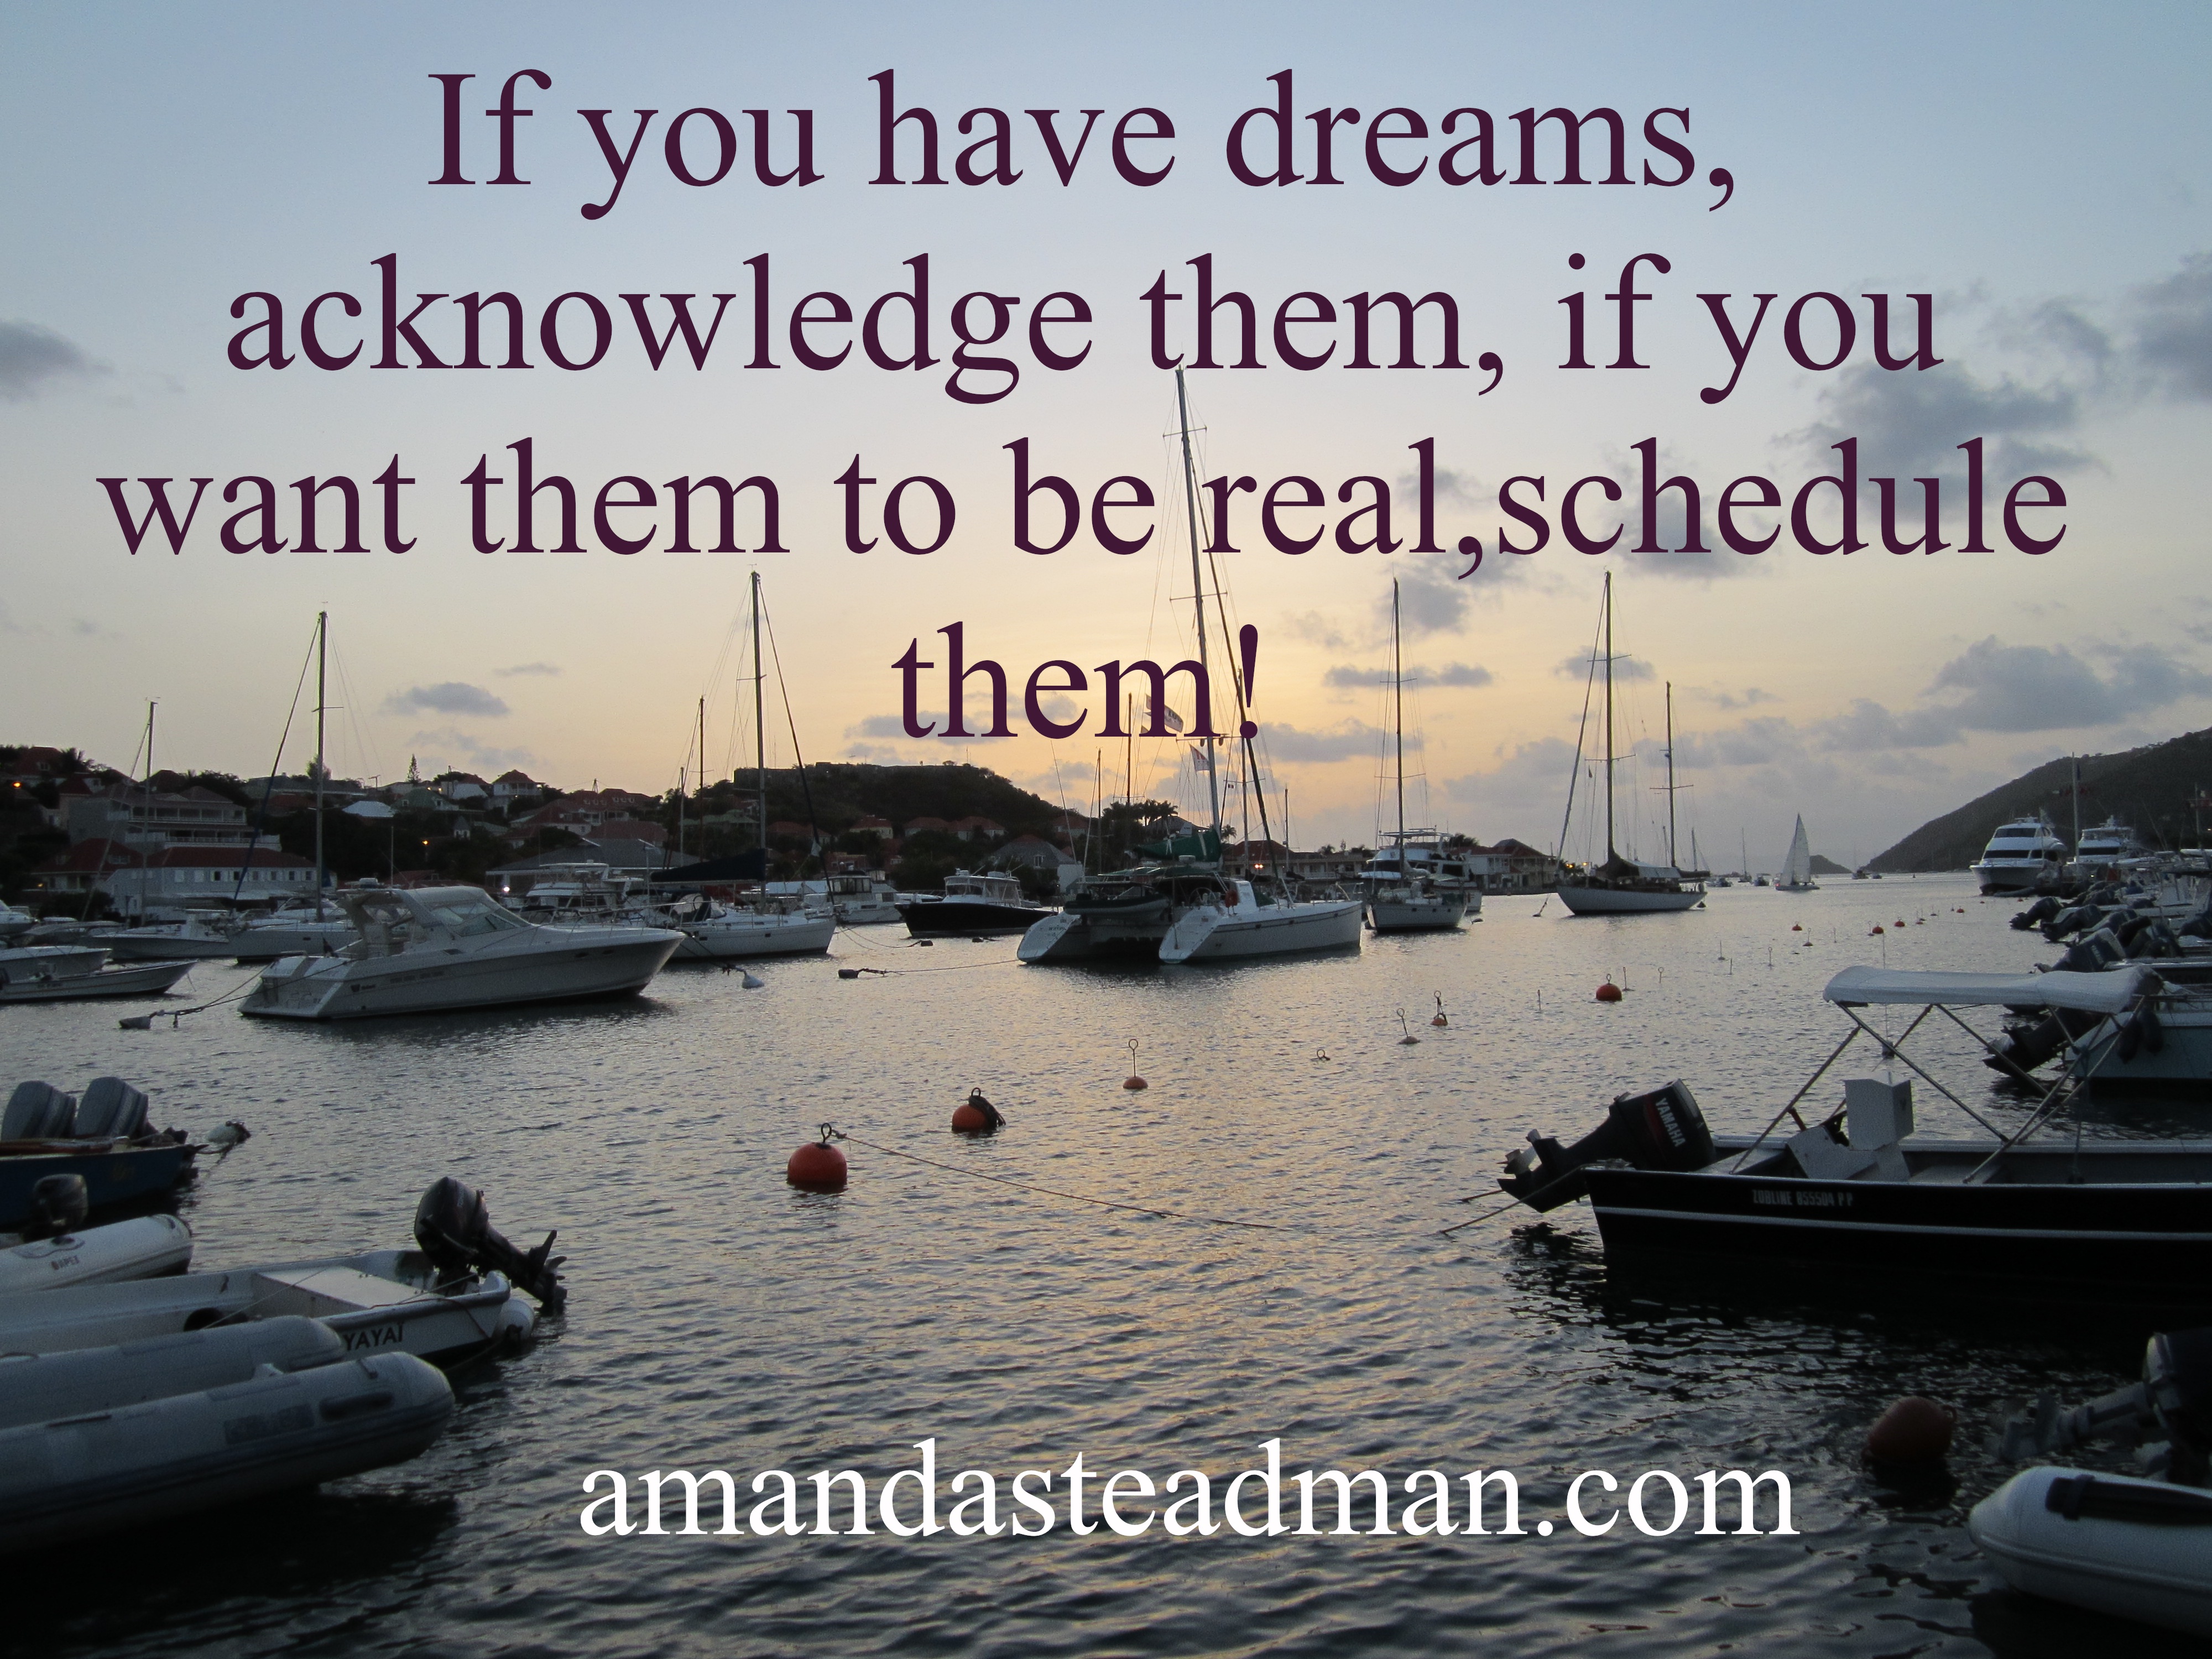 Schedule Your Dreams